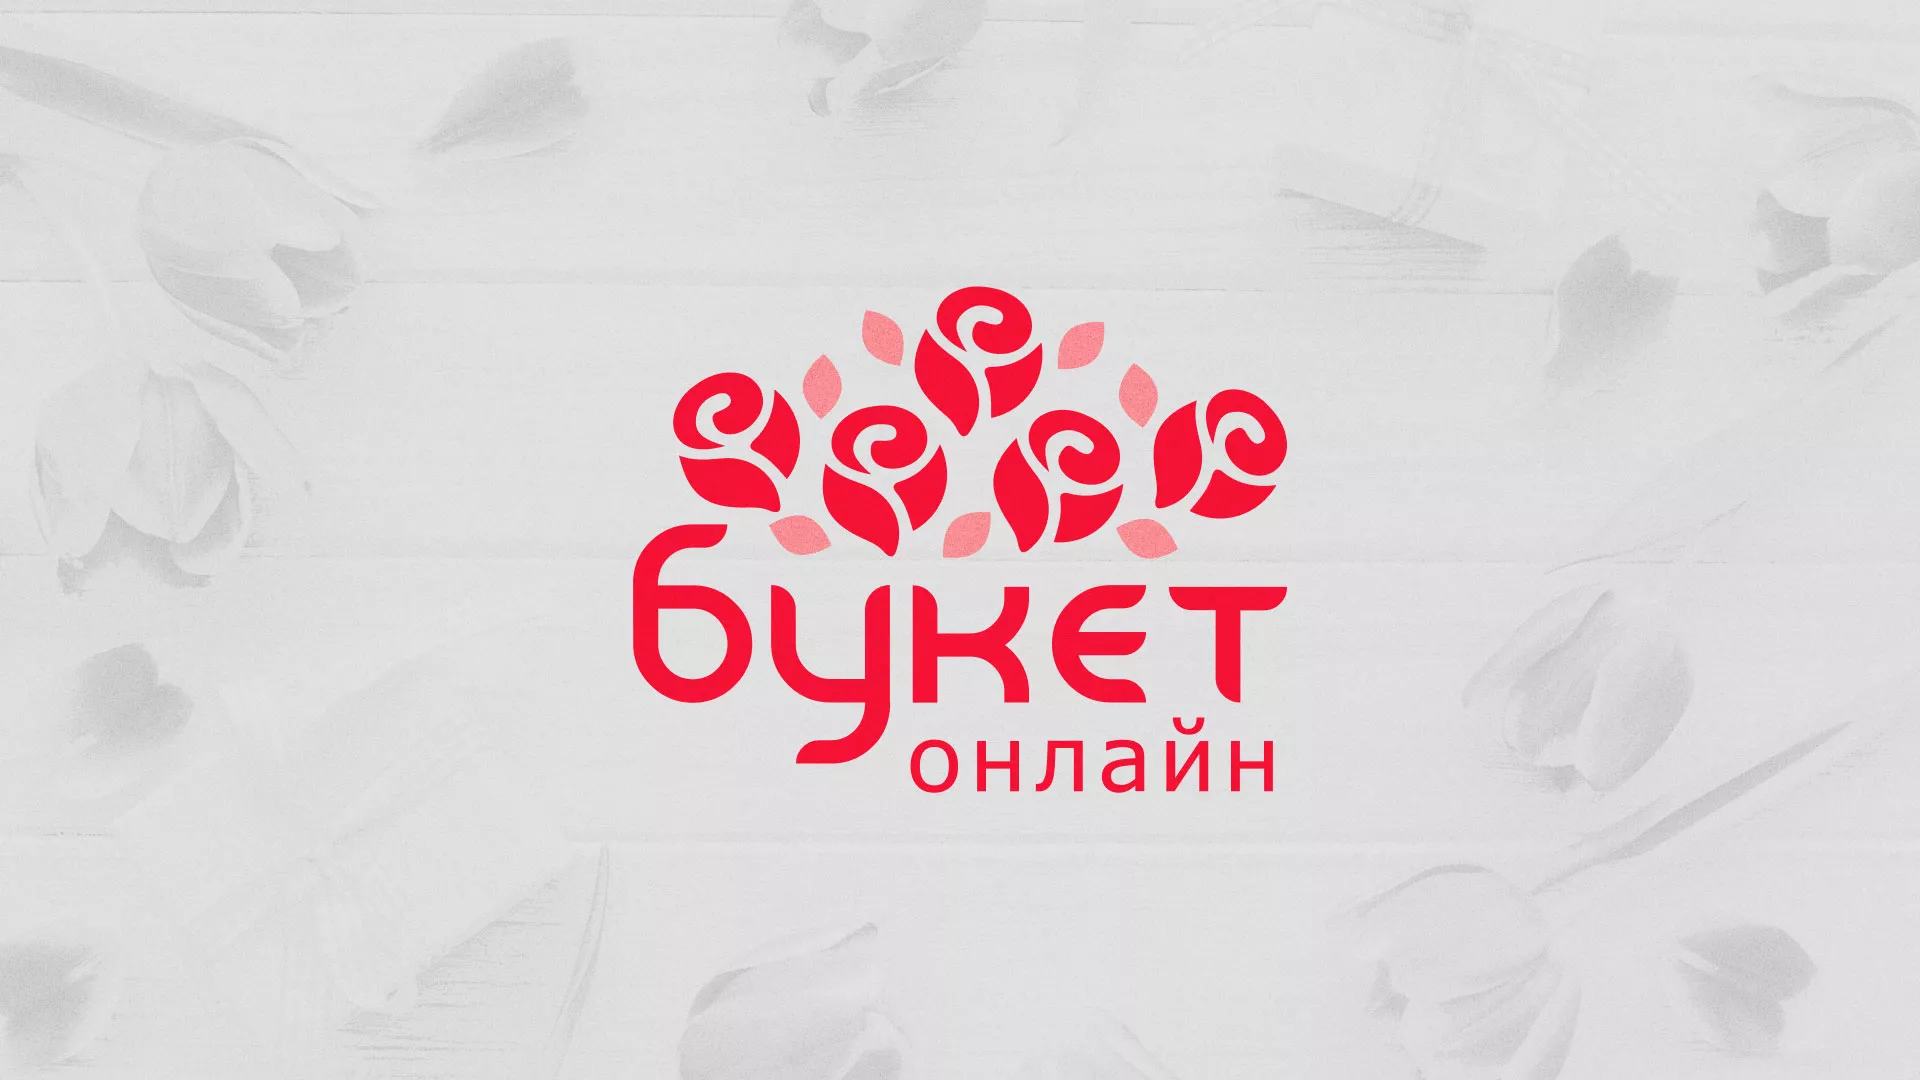 Создание интернет-магазина «Букет-онлайн» по цветам в Усолье-Сибирском